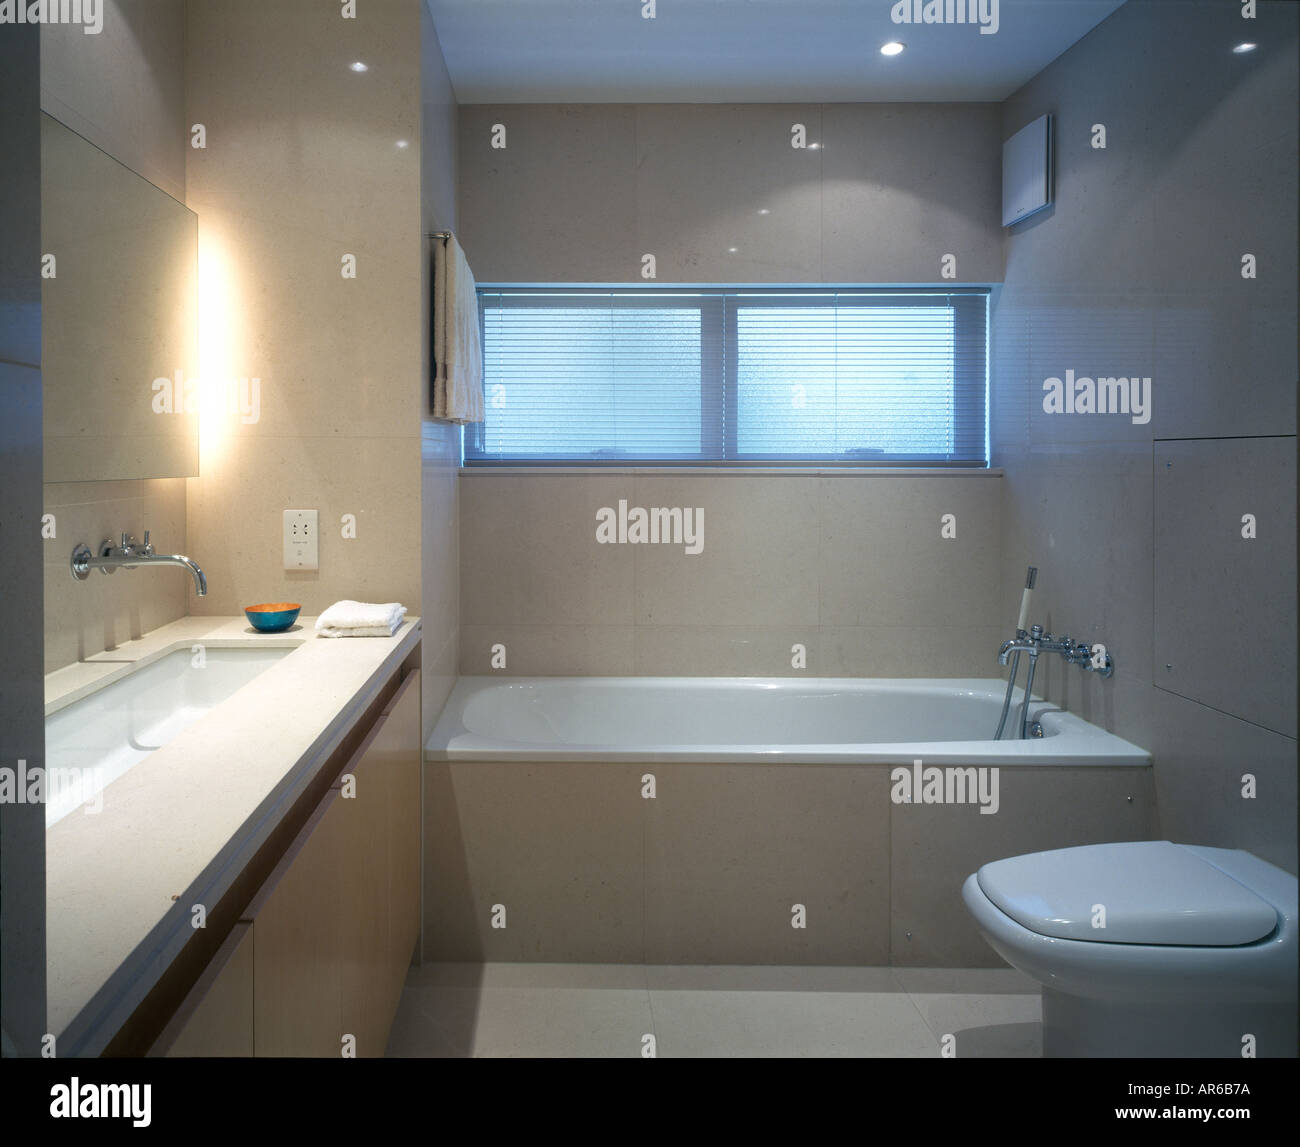 Keller badezimmer -Fotos und -Bildmaterial in hoher Auflösung – Alamy